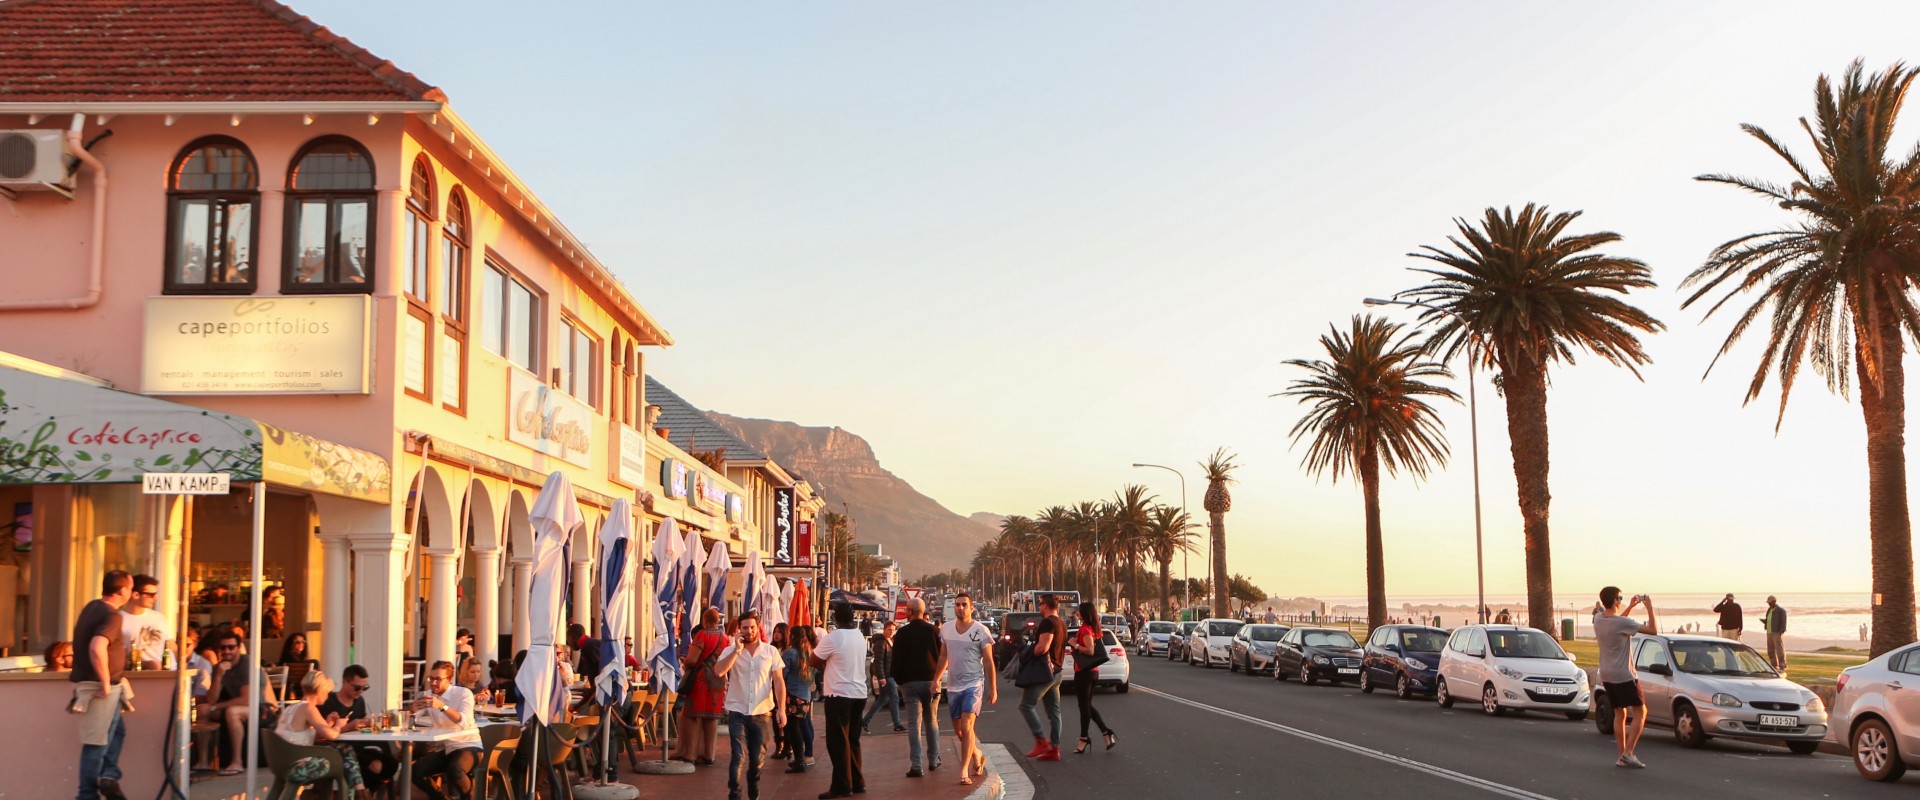 Café Caprice - Top 5 Beach Bars in Cape Town